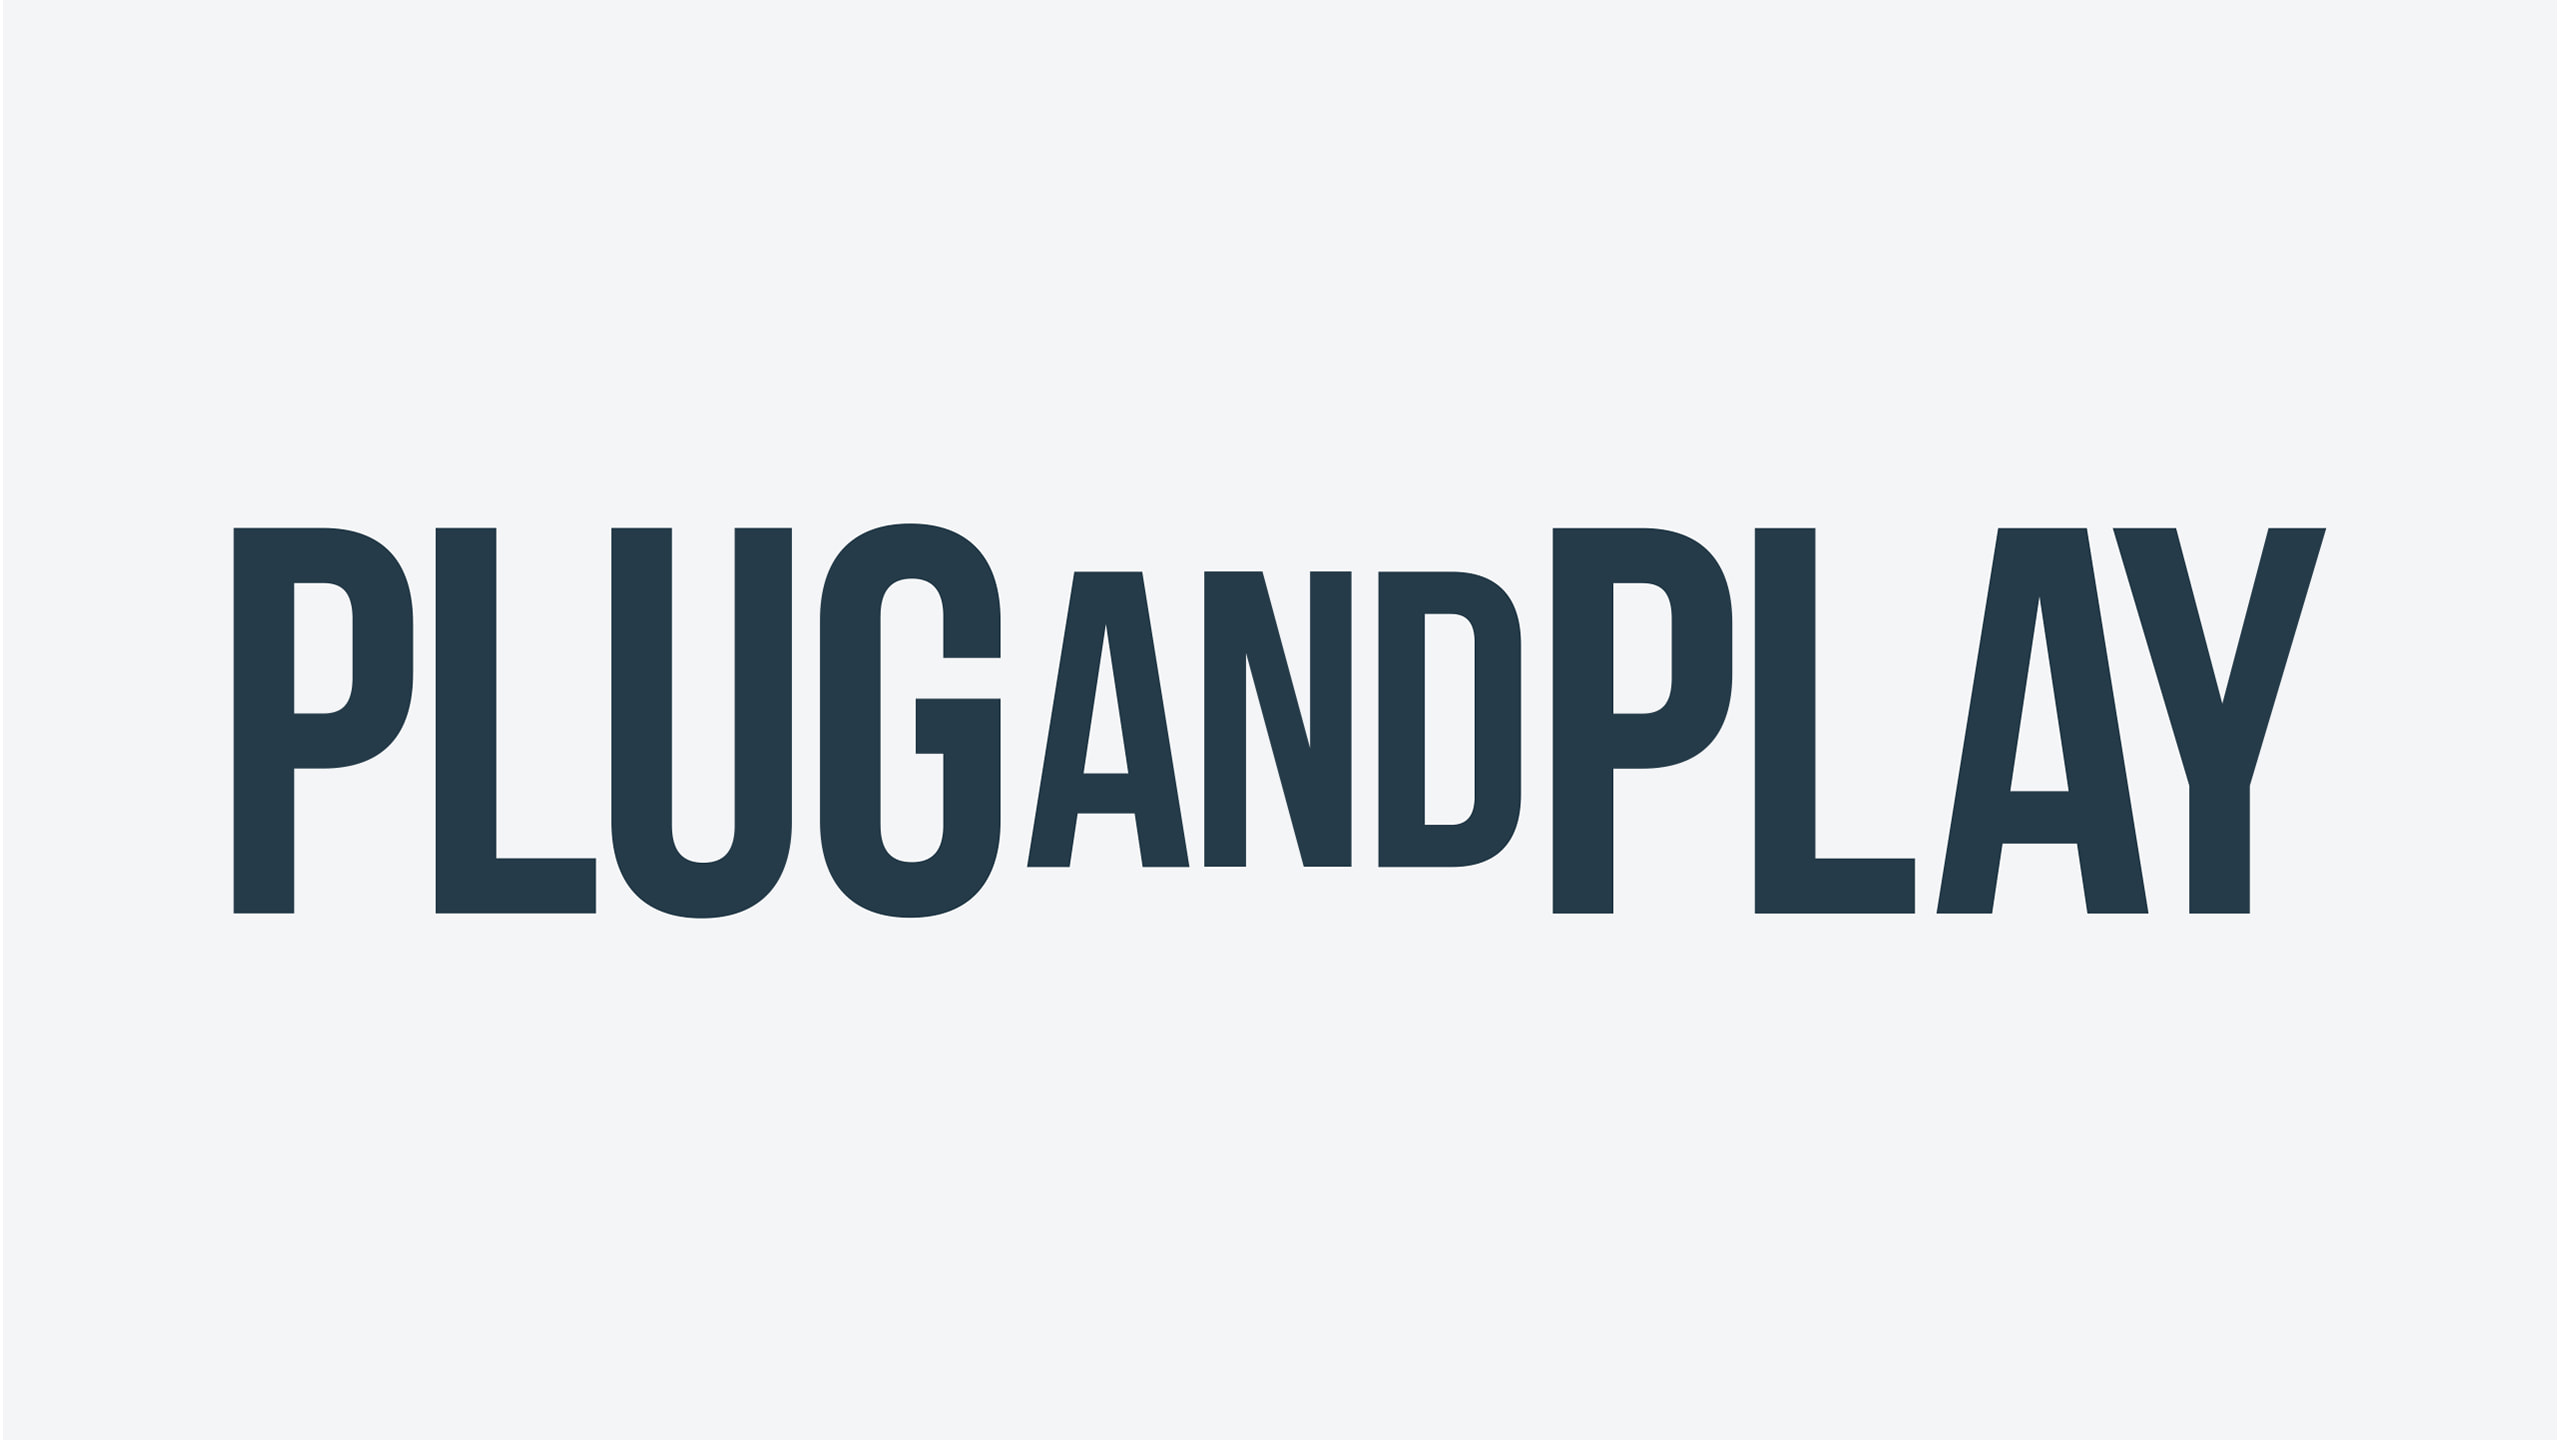 Plug and Play icon